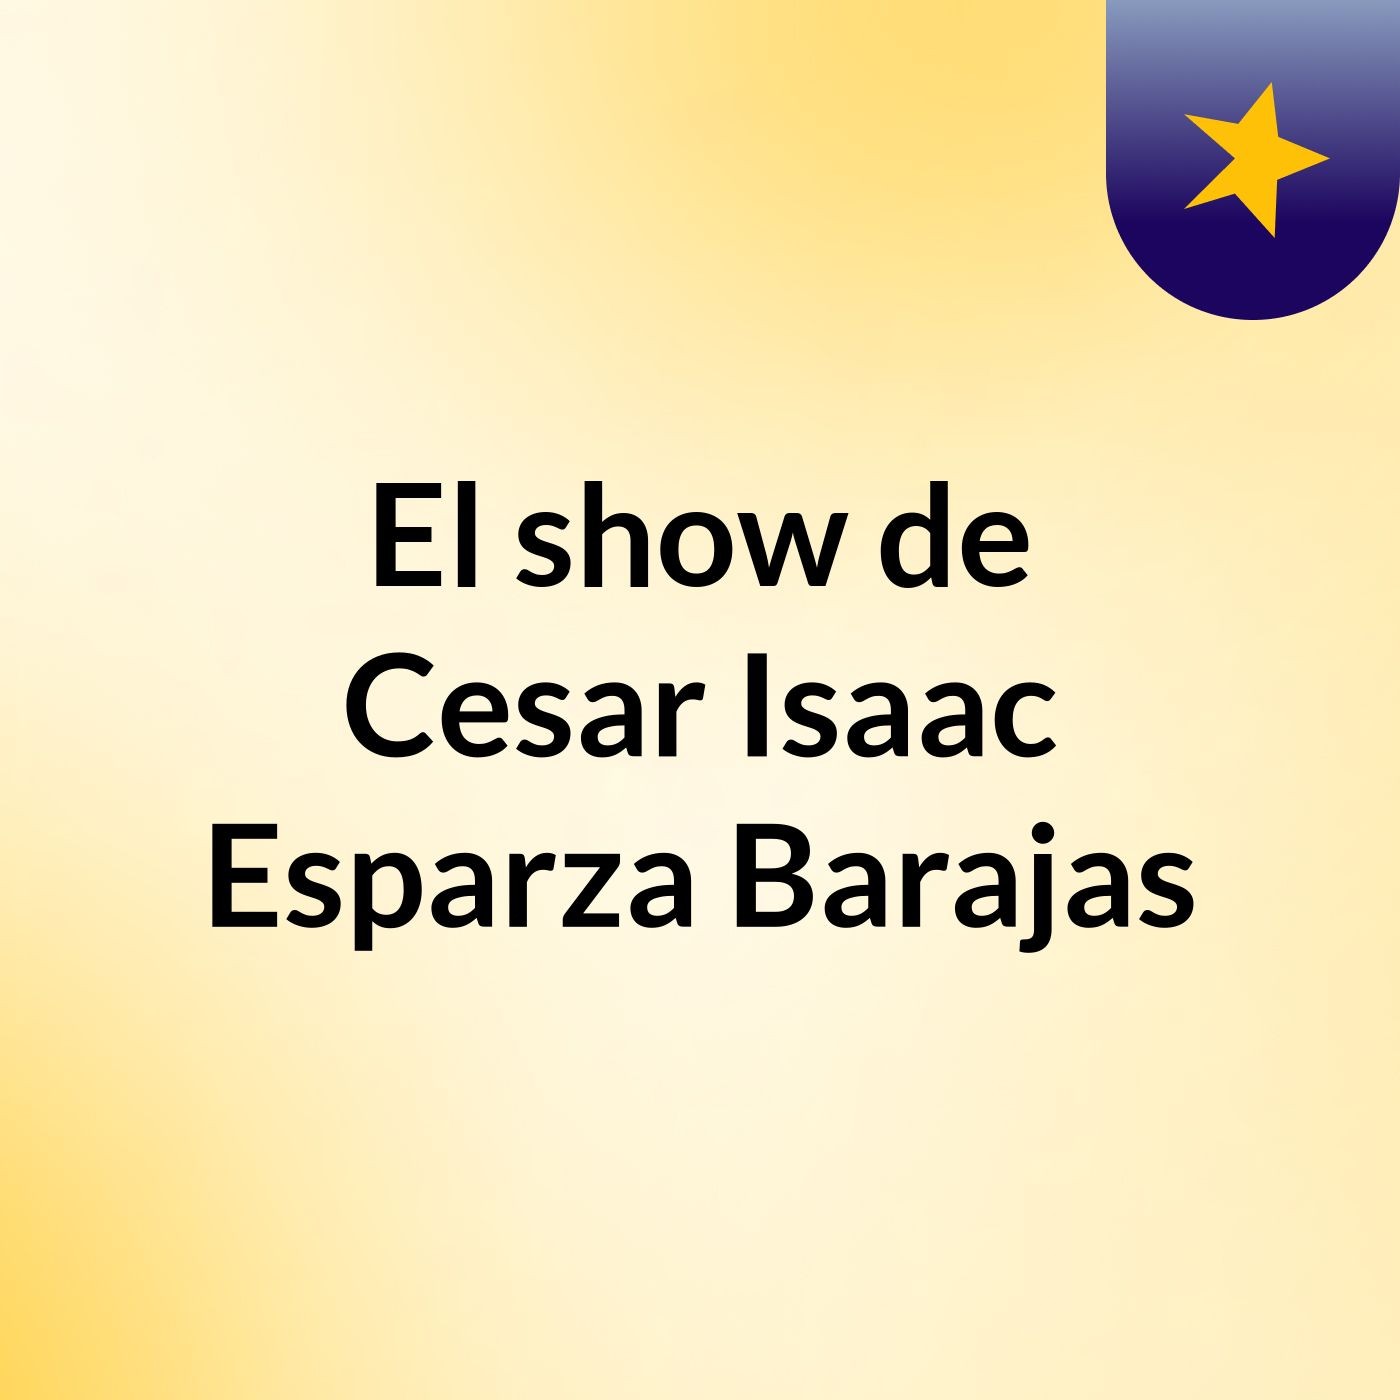 El show de Cesar Isaac Esparza Barajas